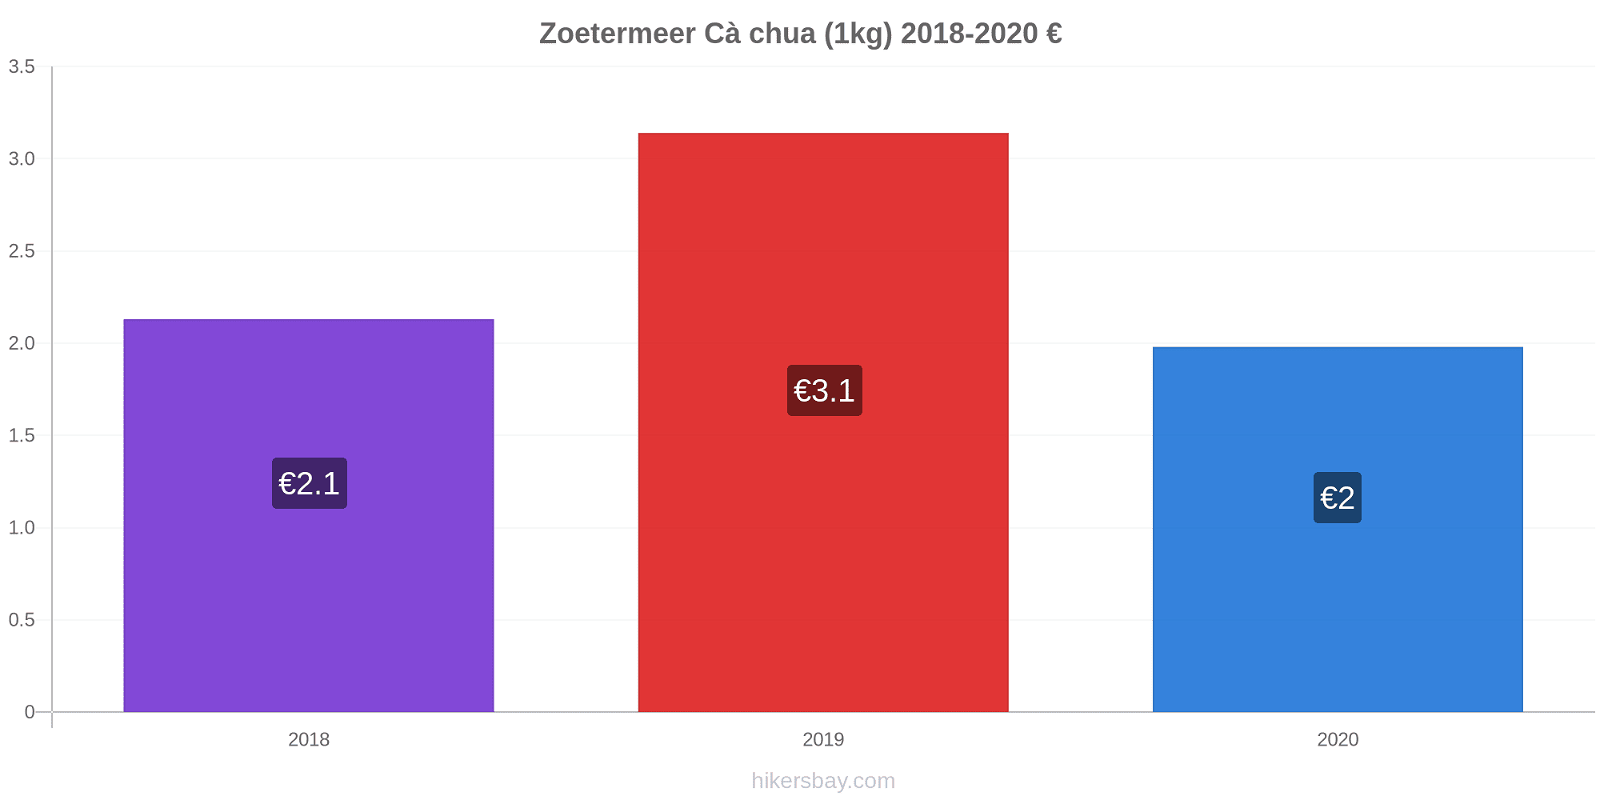 Zoetermeer thay đổi giá Cà chua (1kg) hikersbay.com